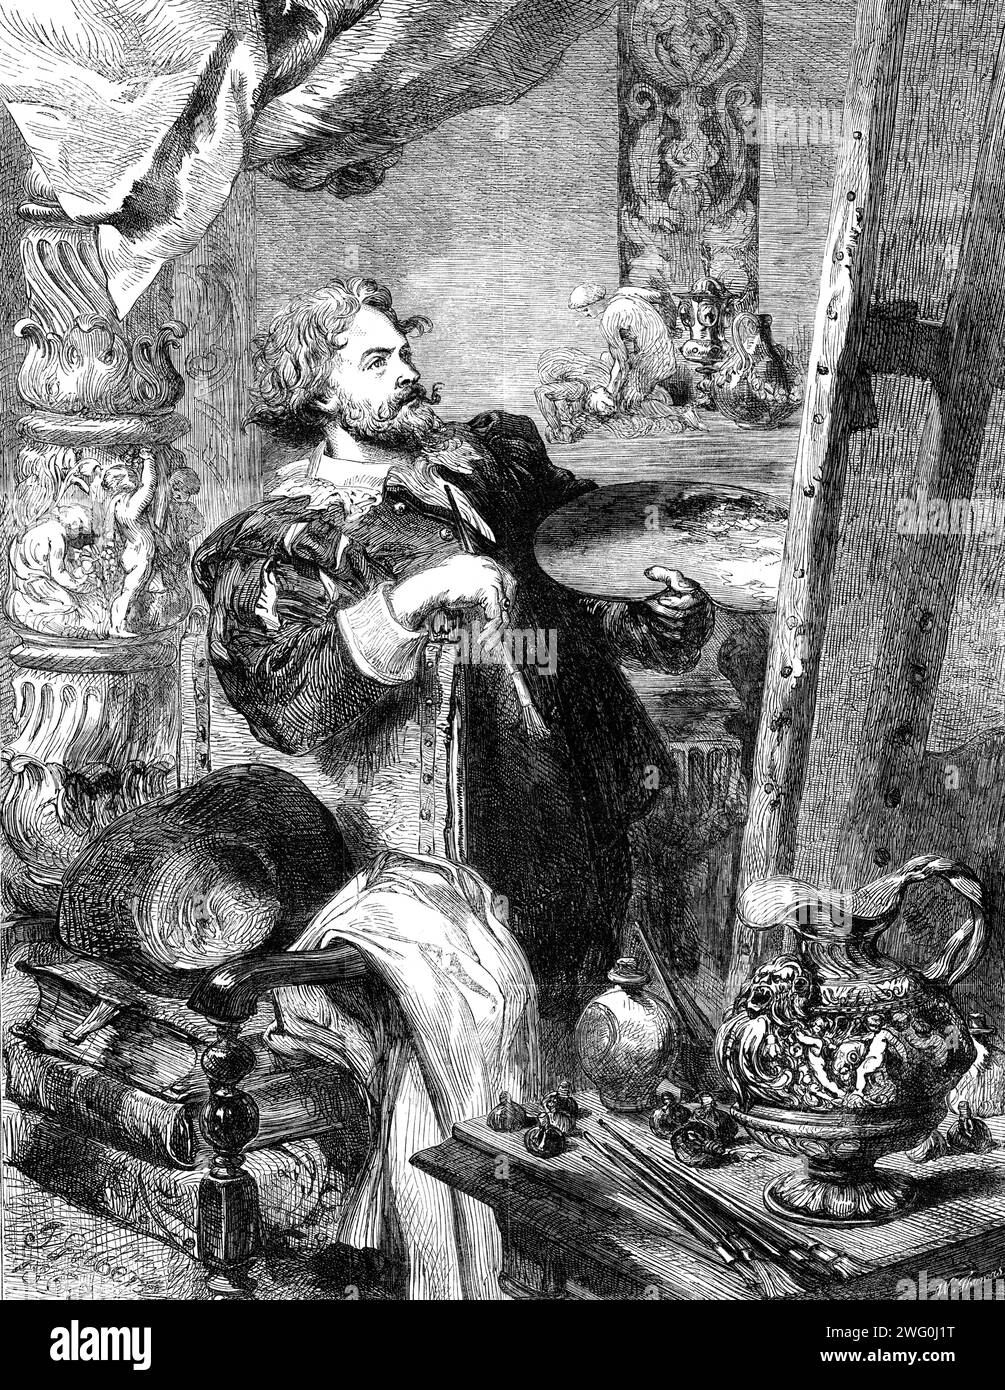 "Peter Paul Rubens", di J. Gilbert, in The Exhibition of the Society of Painters in Water Colours, 1862. Incisione di un dipinto. "La rappresentazione dei grandi maestri nei loro studi è stata un soggetto preferito con artisti moderni e soprattutto stranieri. Il signor Gilbert può naturalmente prendere questo mezzo per mostrare la sua ammirazione e riverenza per il grande maestro fiammingo ... l'atteggiamento di Rubens, che fa un passo indietro per vedere l'effetto del suo lavoro, non è solo caratteristico di tutti gli artisti, ma è particolarmente appropriato se assunto come l'abitudine di questo pittore; perché nessun maestro dipendeva di più Foto Stock